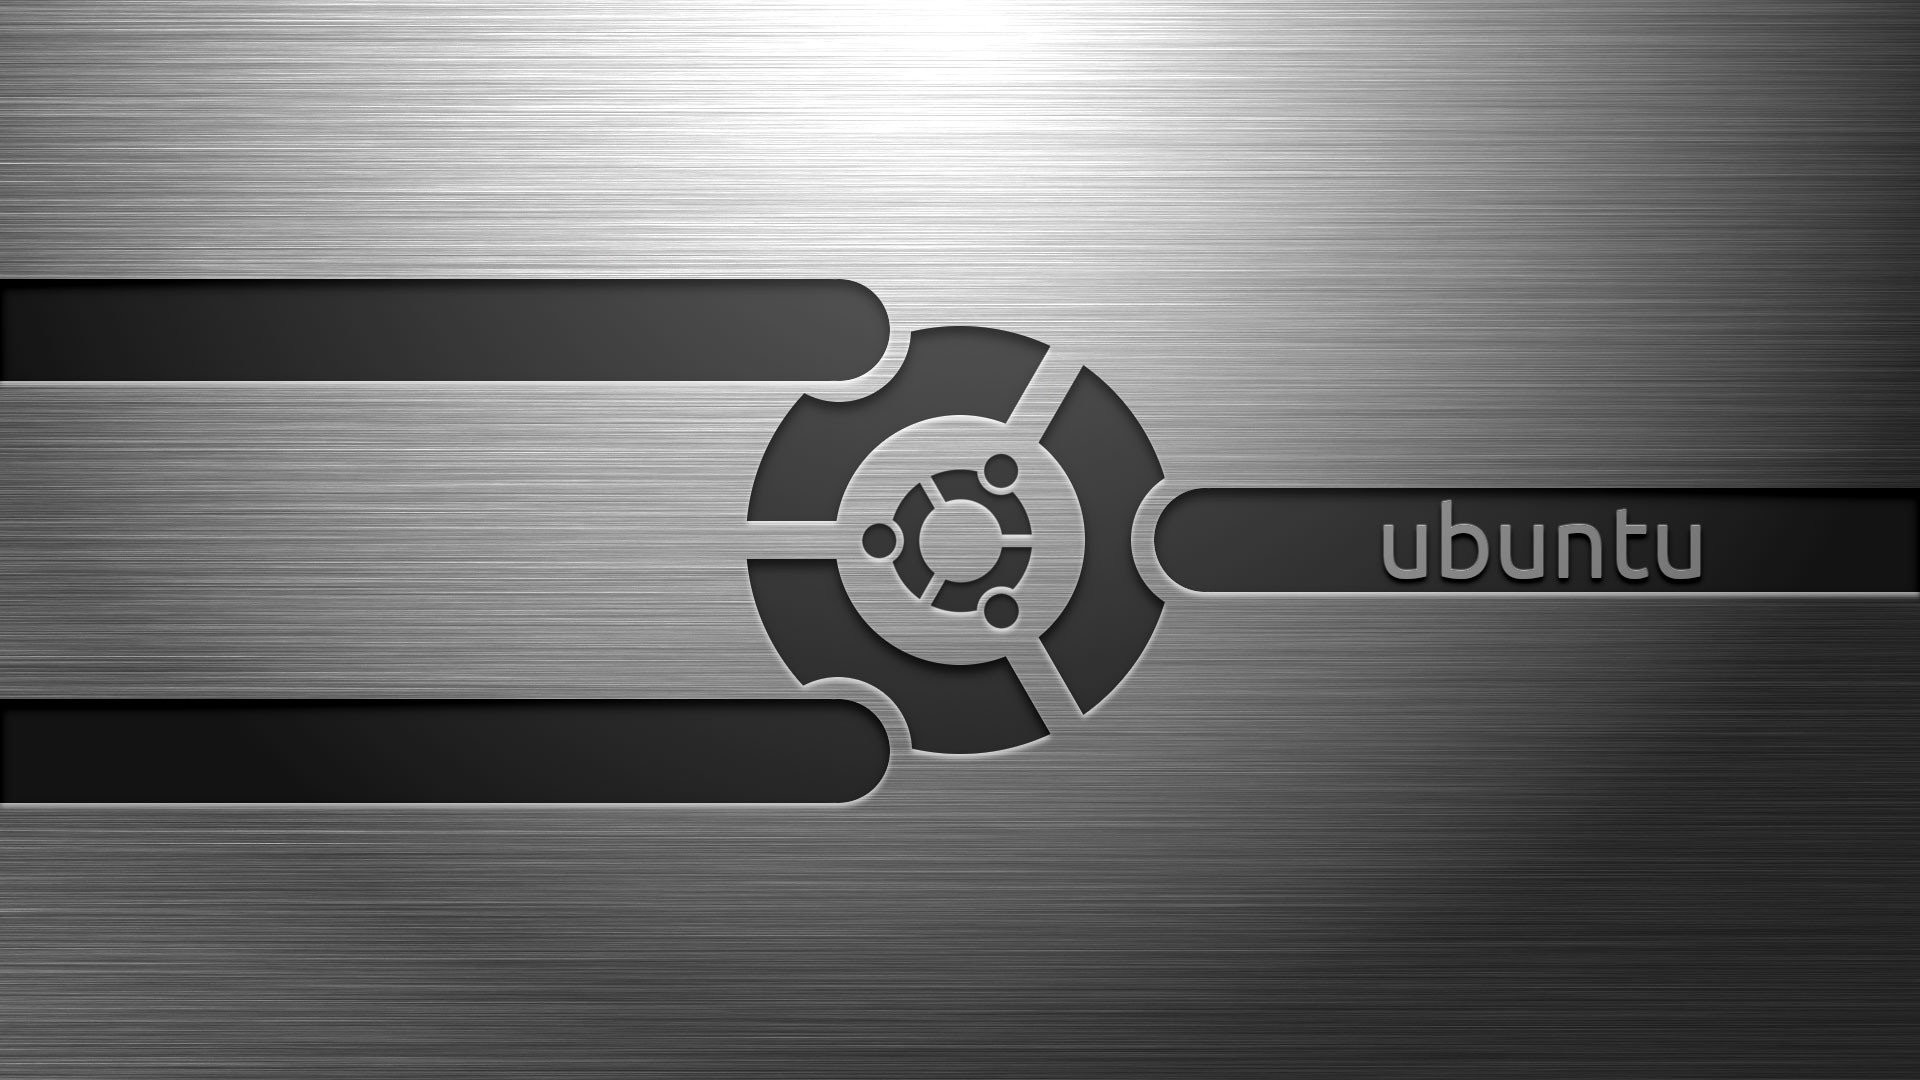 ubuntu dark wallpaper,logo,font,graphics